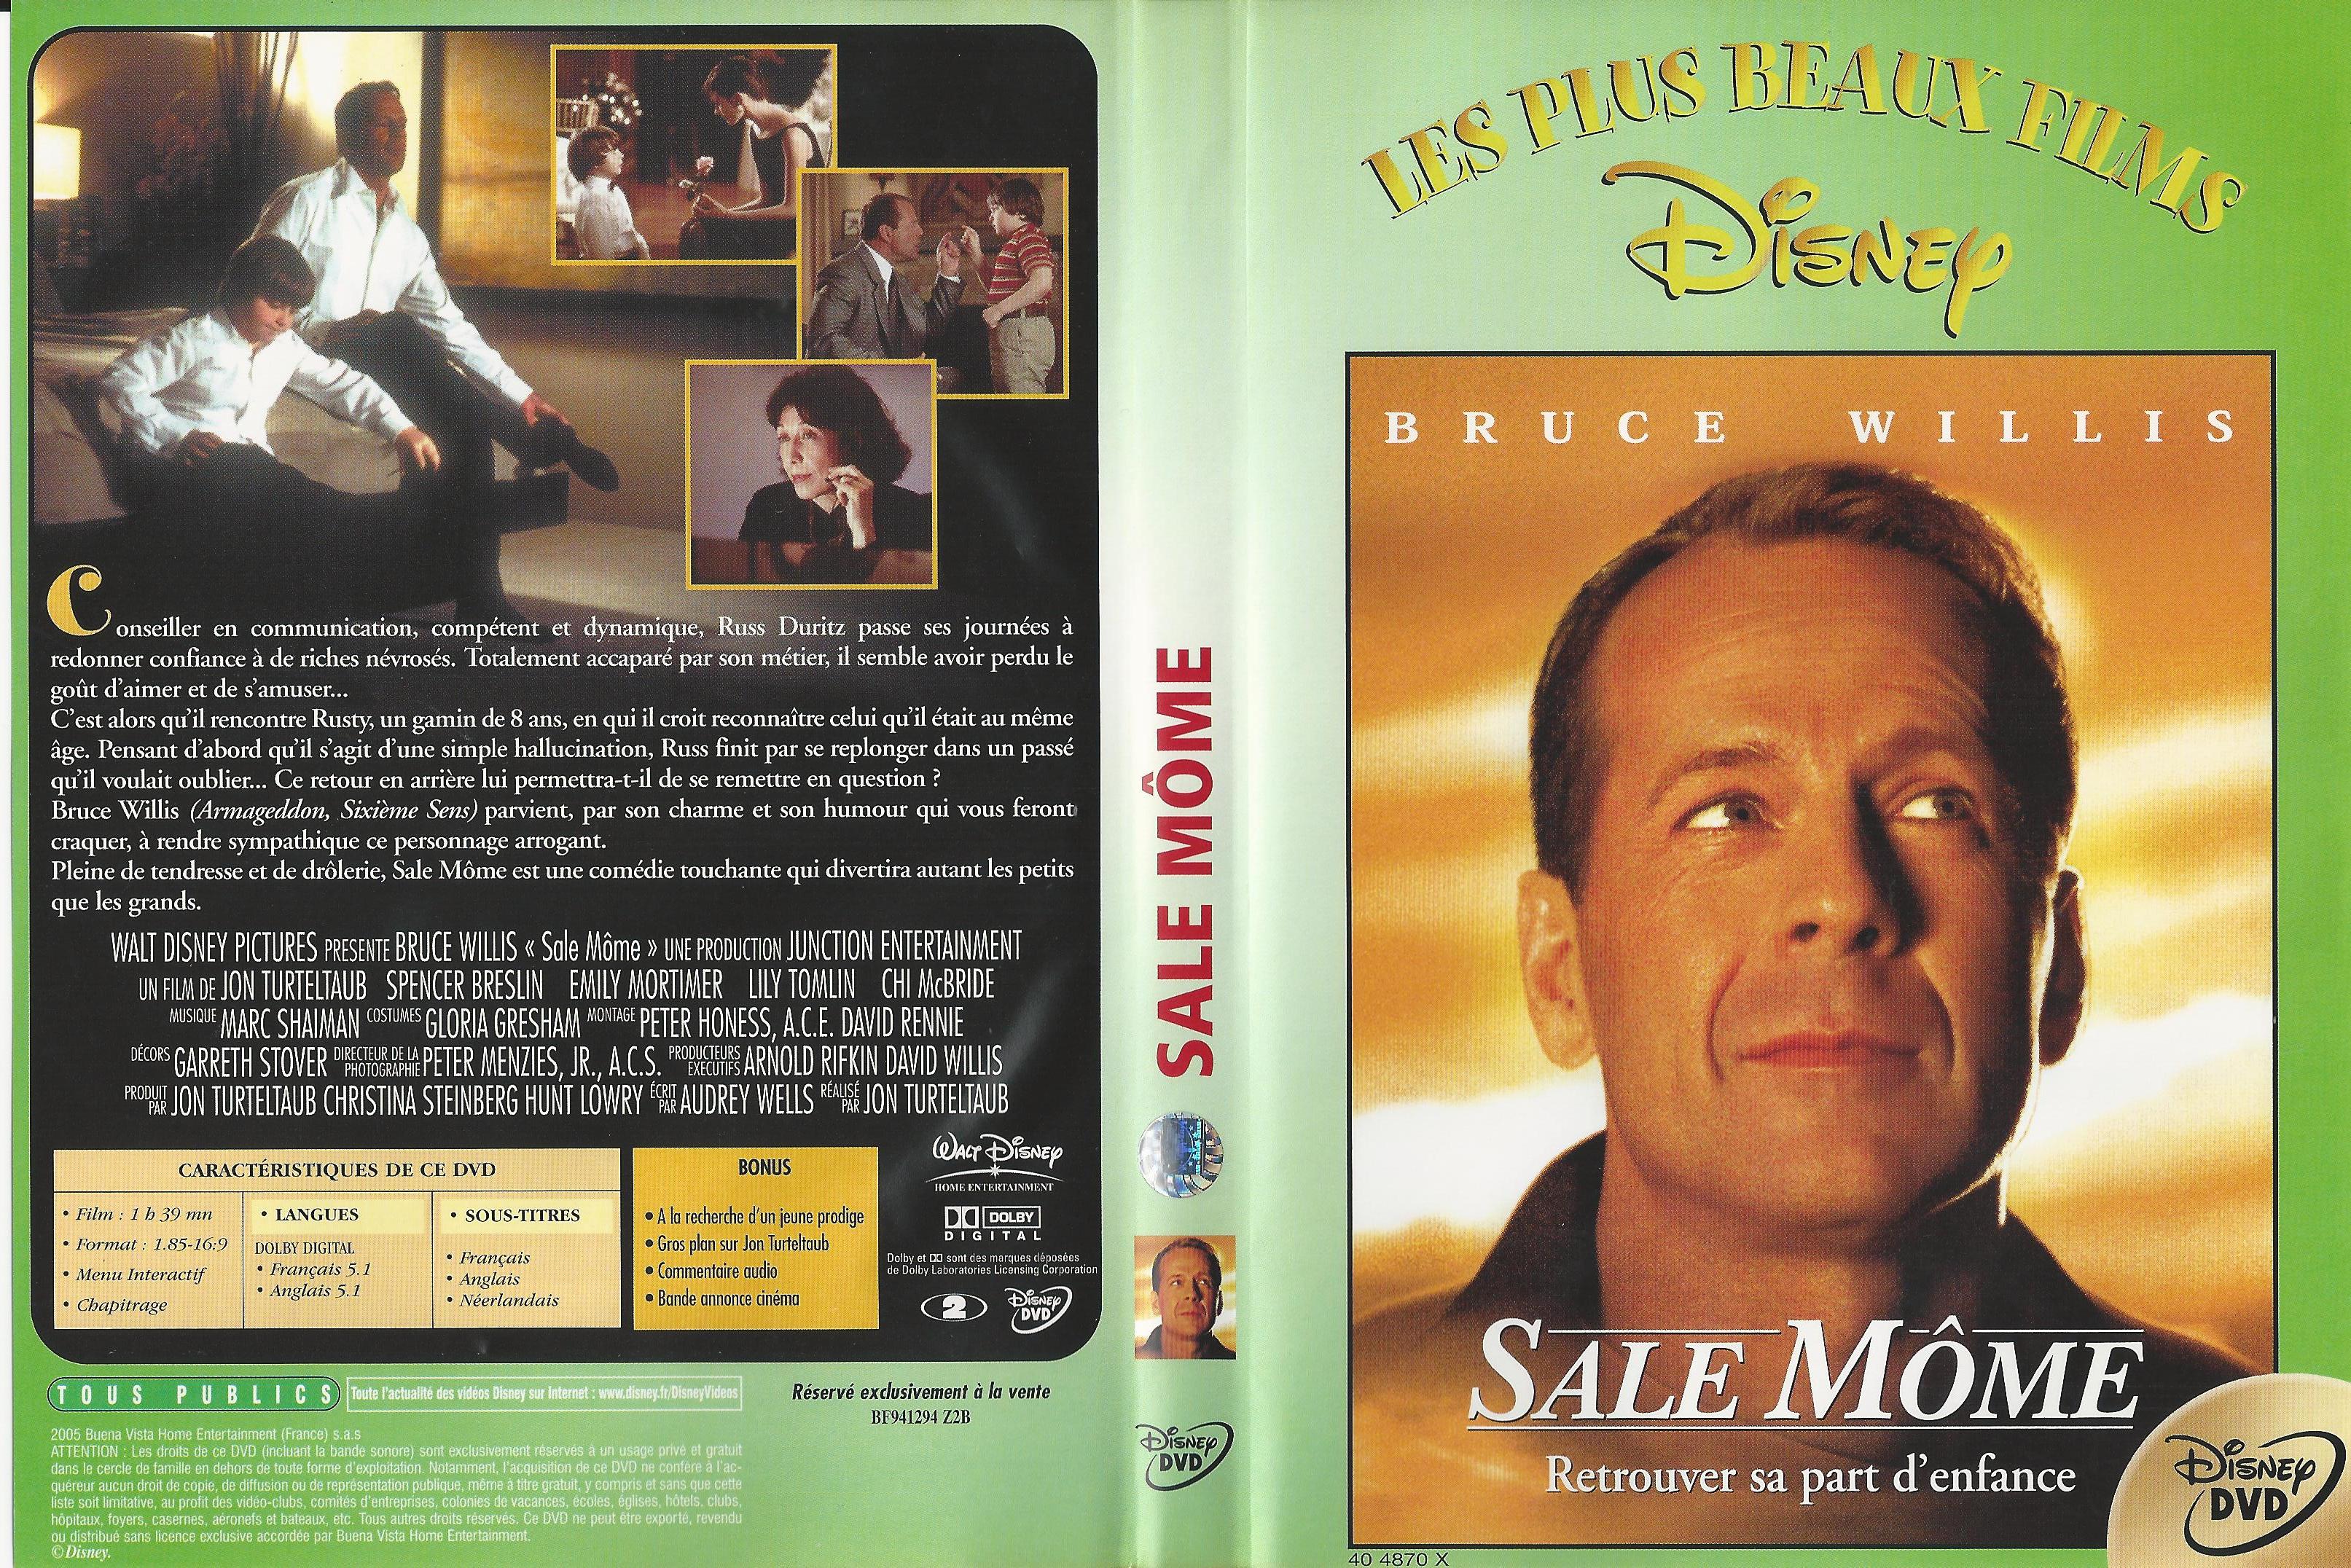 Jaquette DVD Sale mome v3